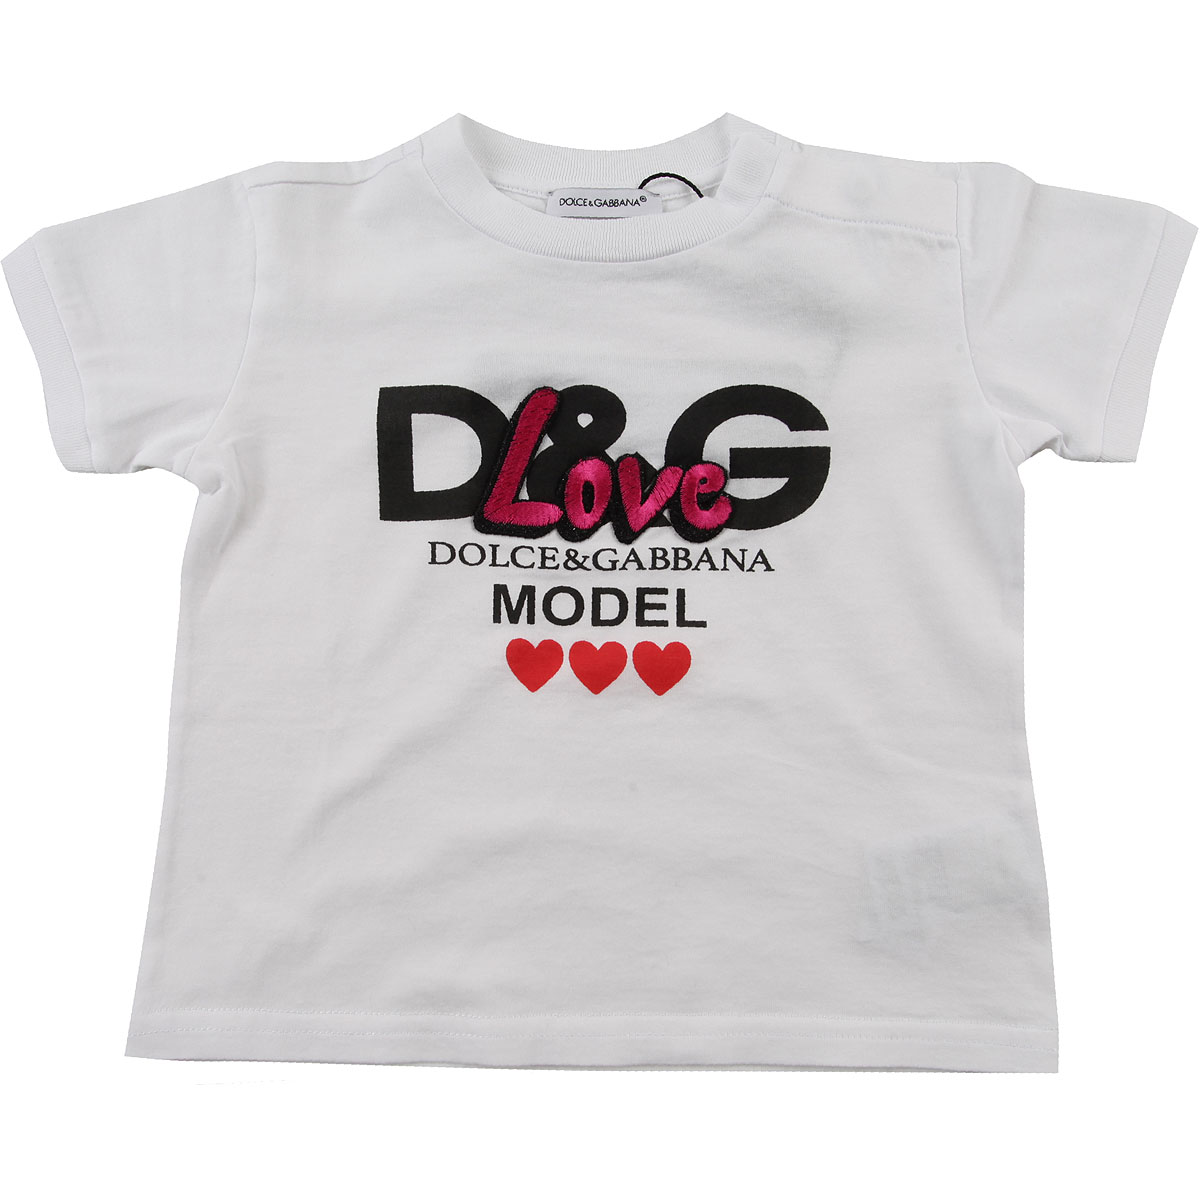 Dolce & Gabbana Baby T-Shirt für Mädchen Günstig im Outlet Sale, Weiss, Baumwolle, 2017, 6M 9M